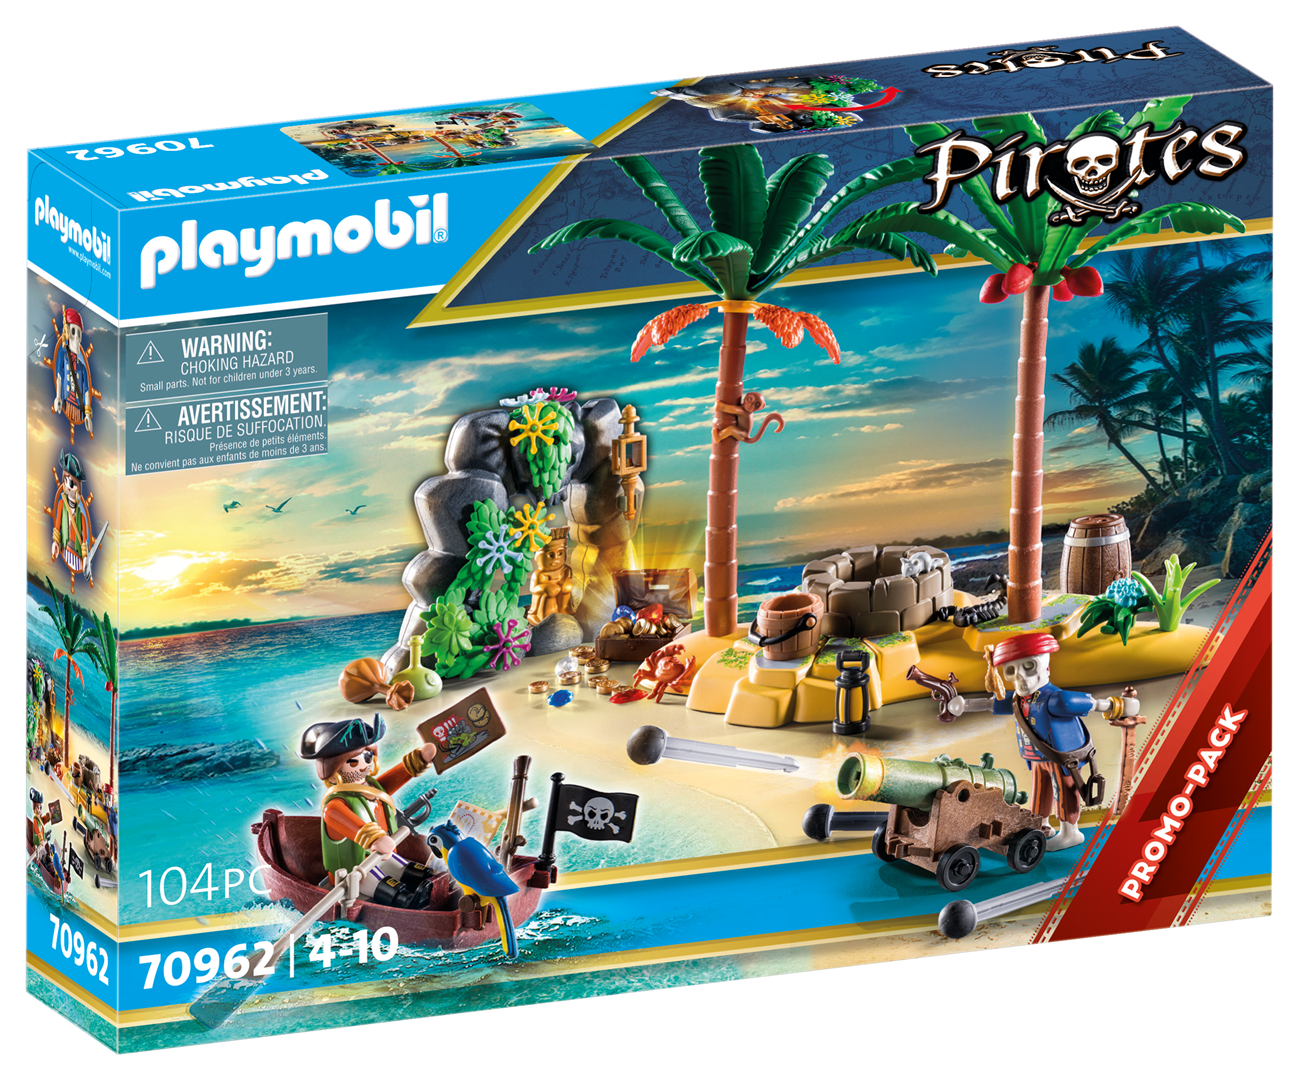 Playmobil pirates promo pack isola dei pirati per bambini dai 4 anni in su - Playmobil